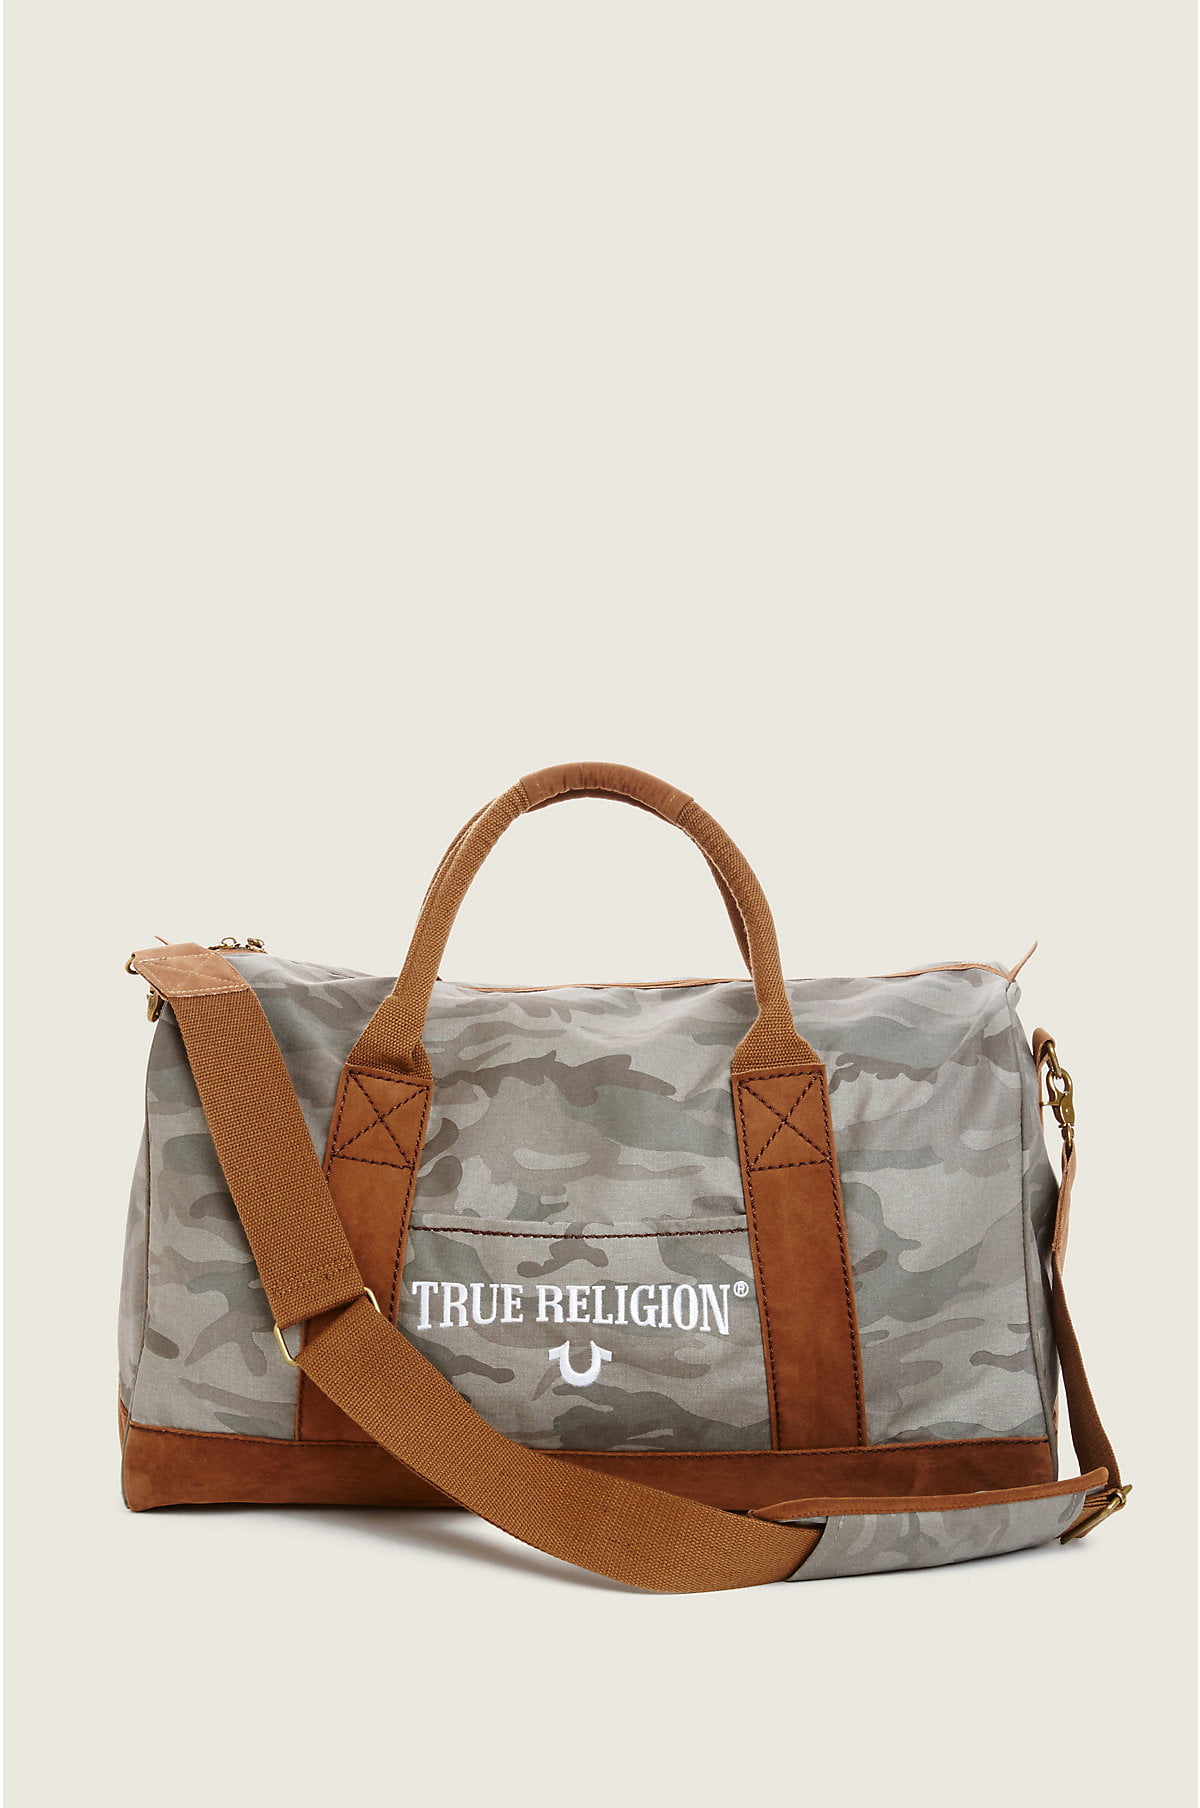 true religion travel bag